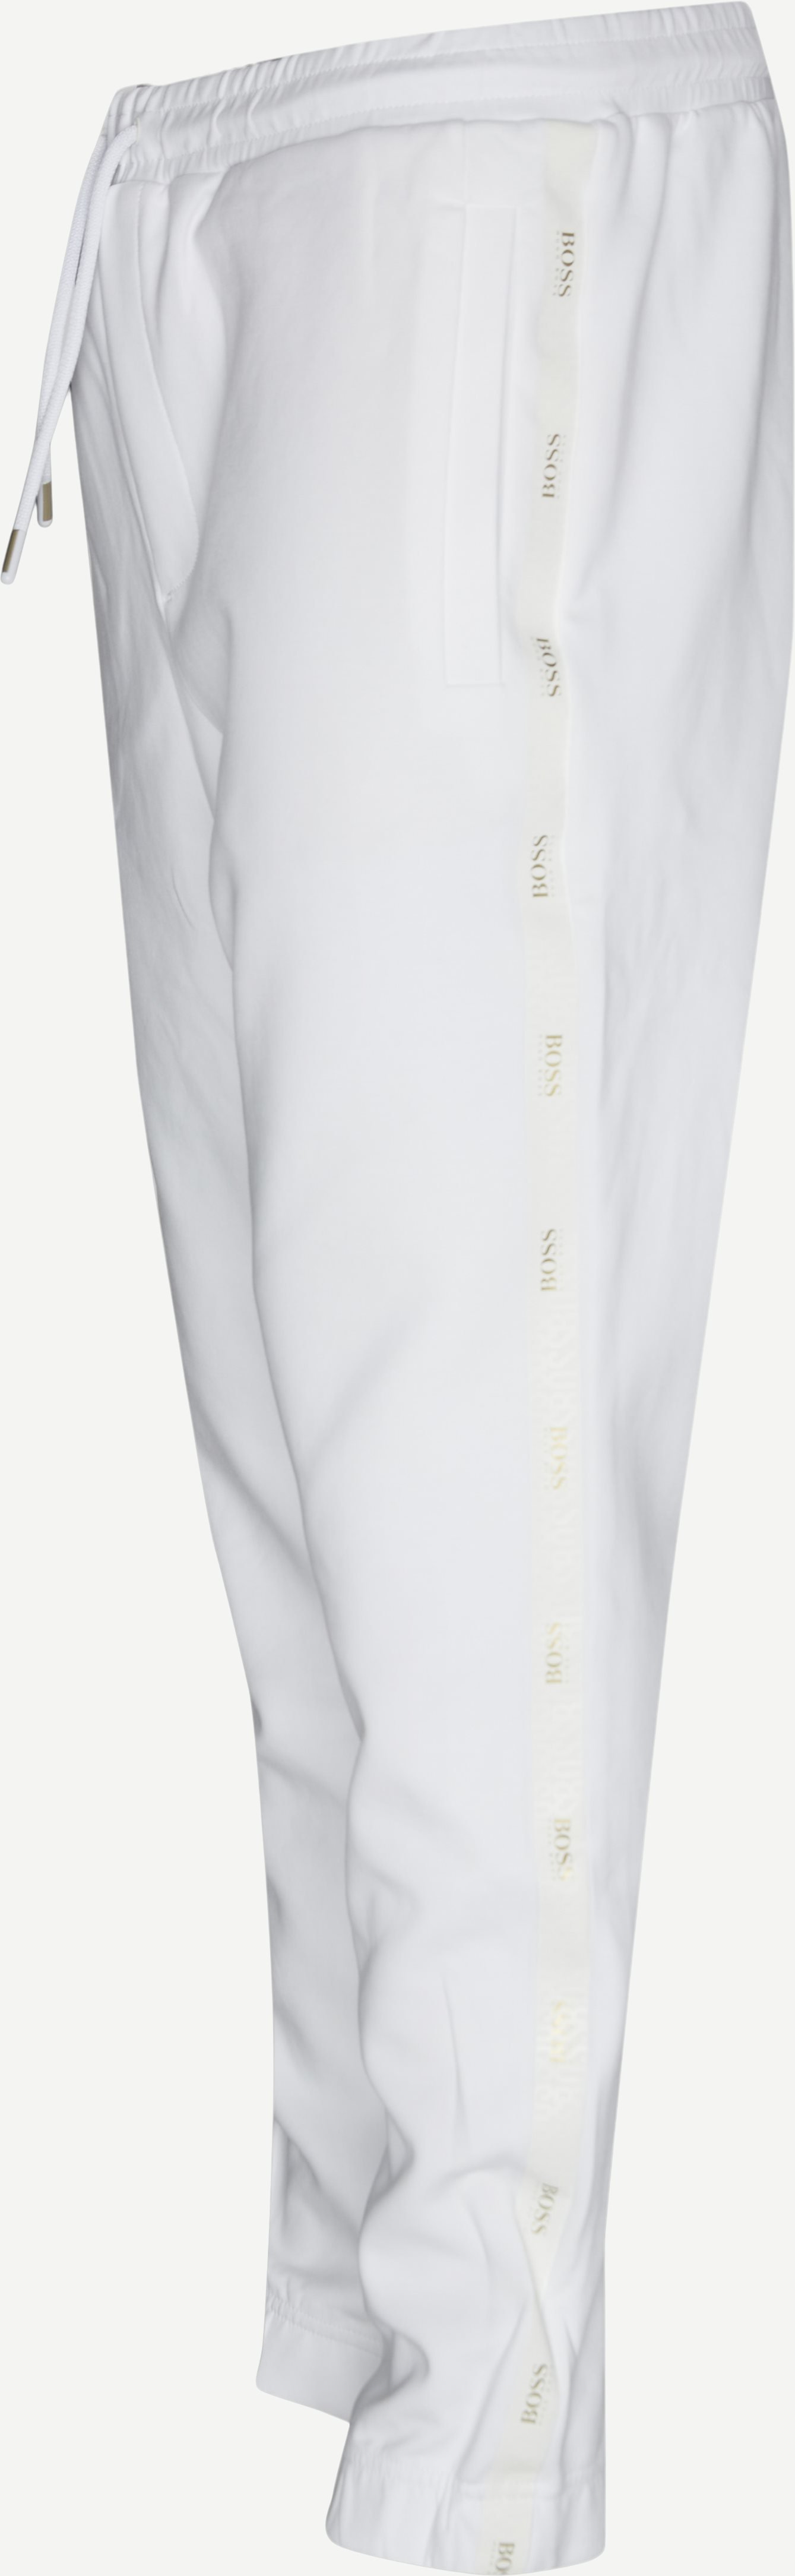 Hadiko 2 Sweatpants - Trousers - Regular fit - White